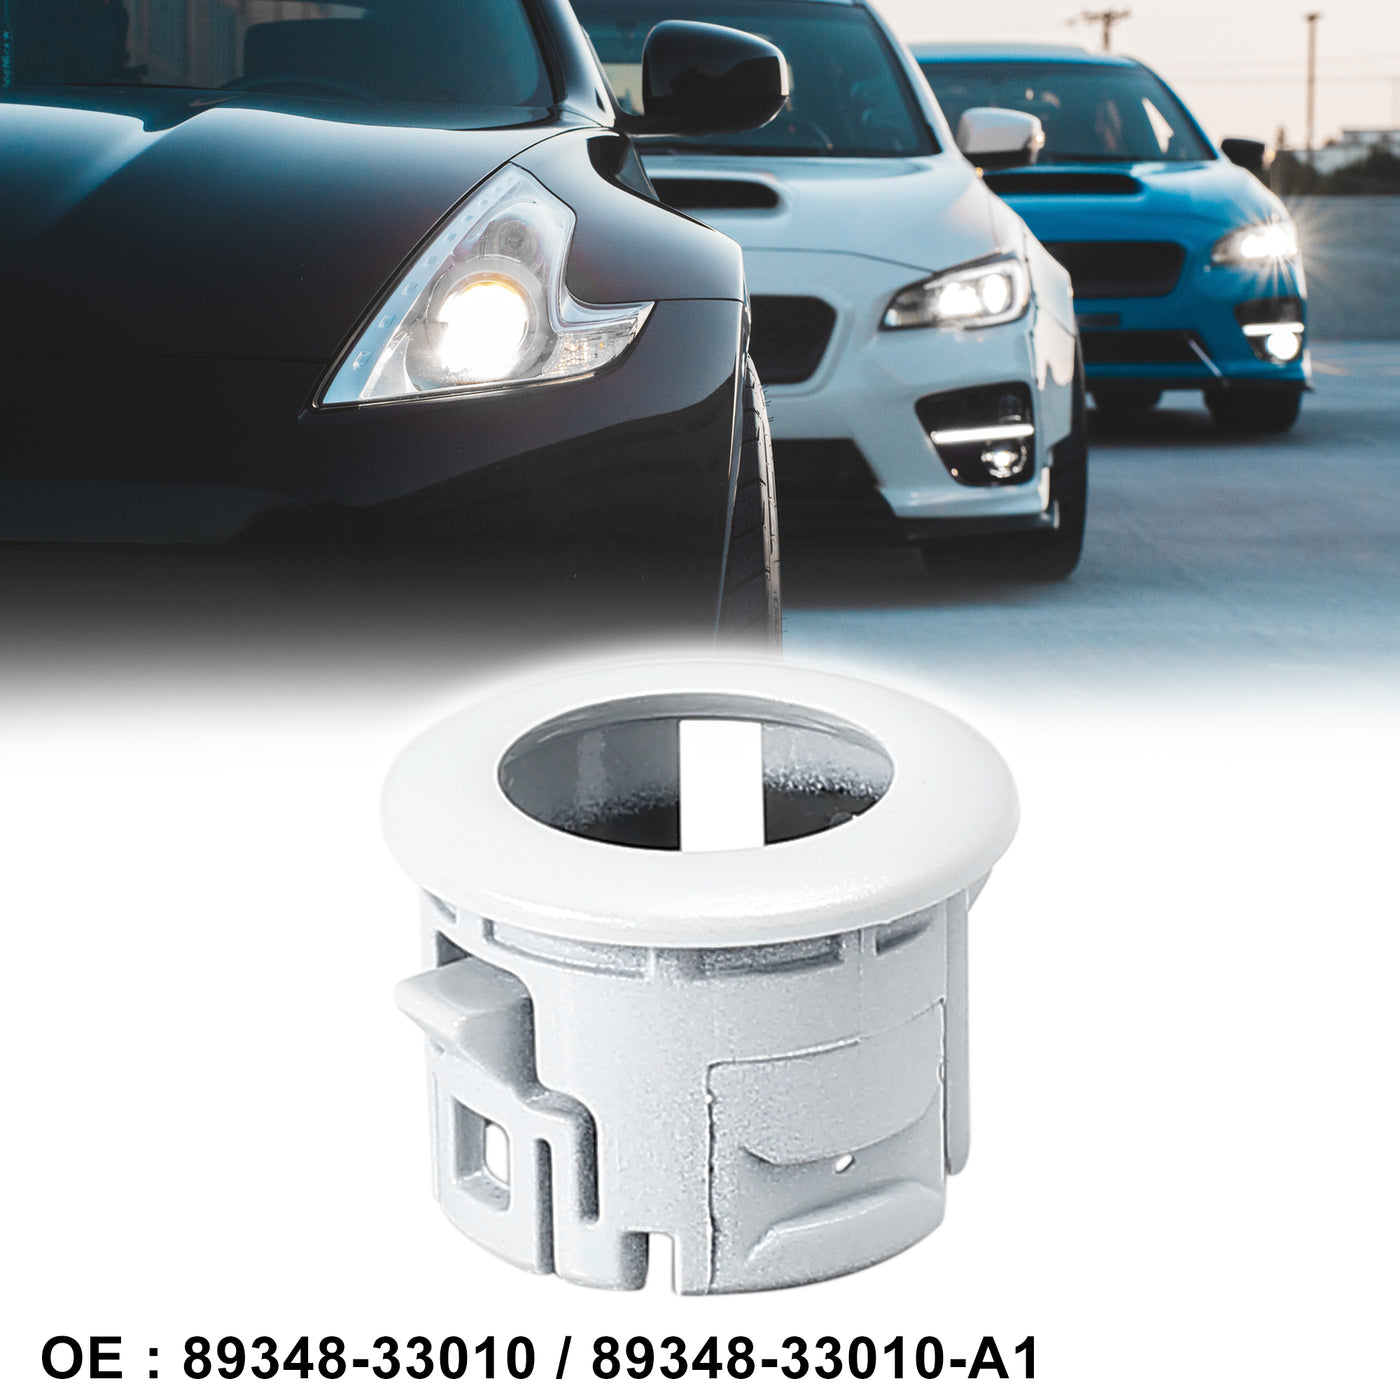 X AUTOHAUX 89348-33010 Car Bumper Parking Assist Sensor Retainer Holder Bracket for Lexus ES350 2007-2012 HS250h 2010-2012 White